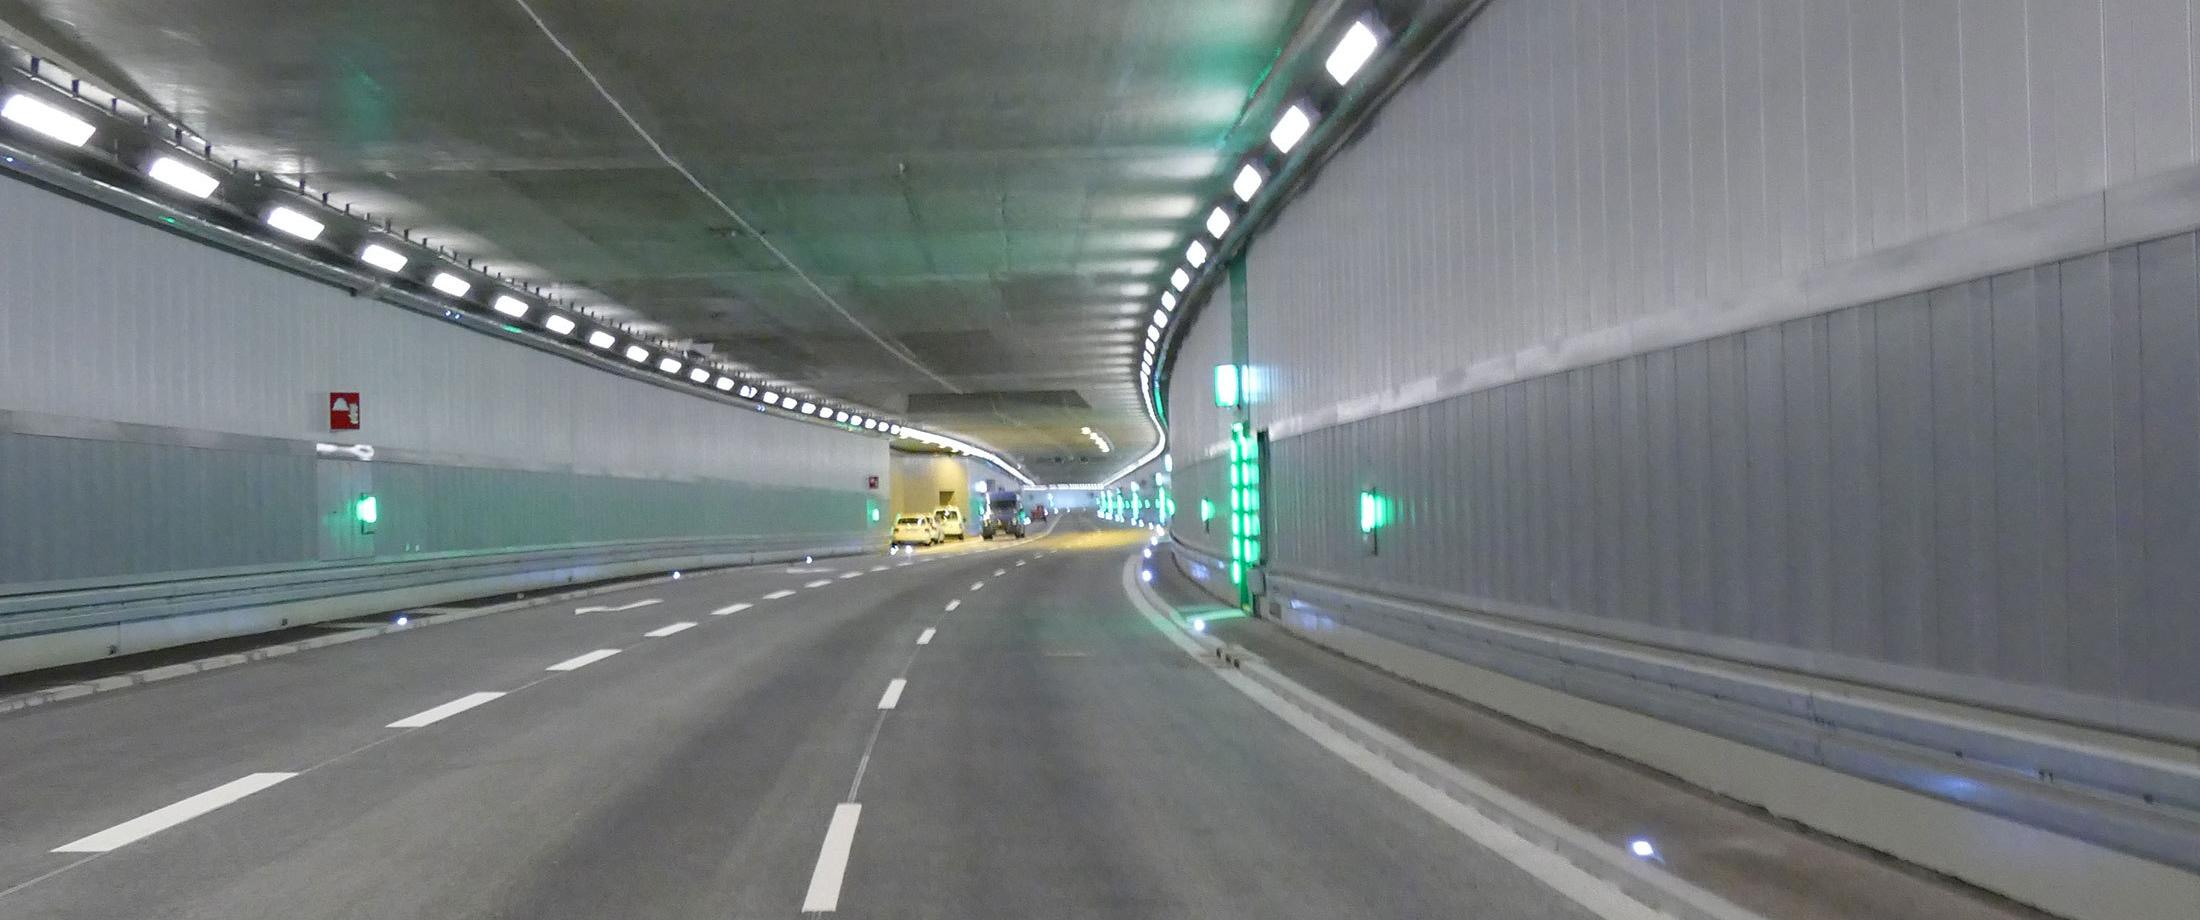 Luki Tunnel